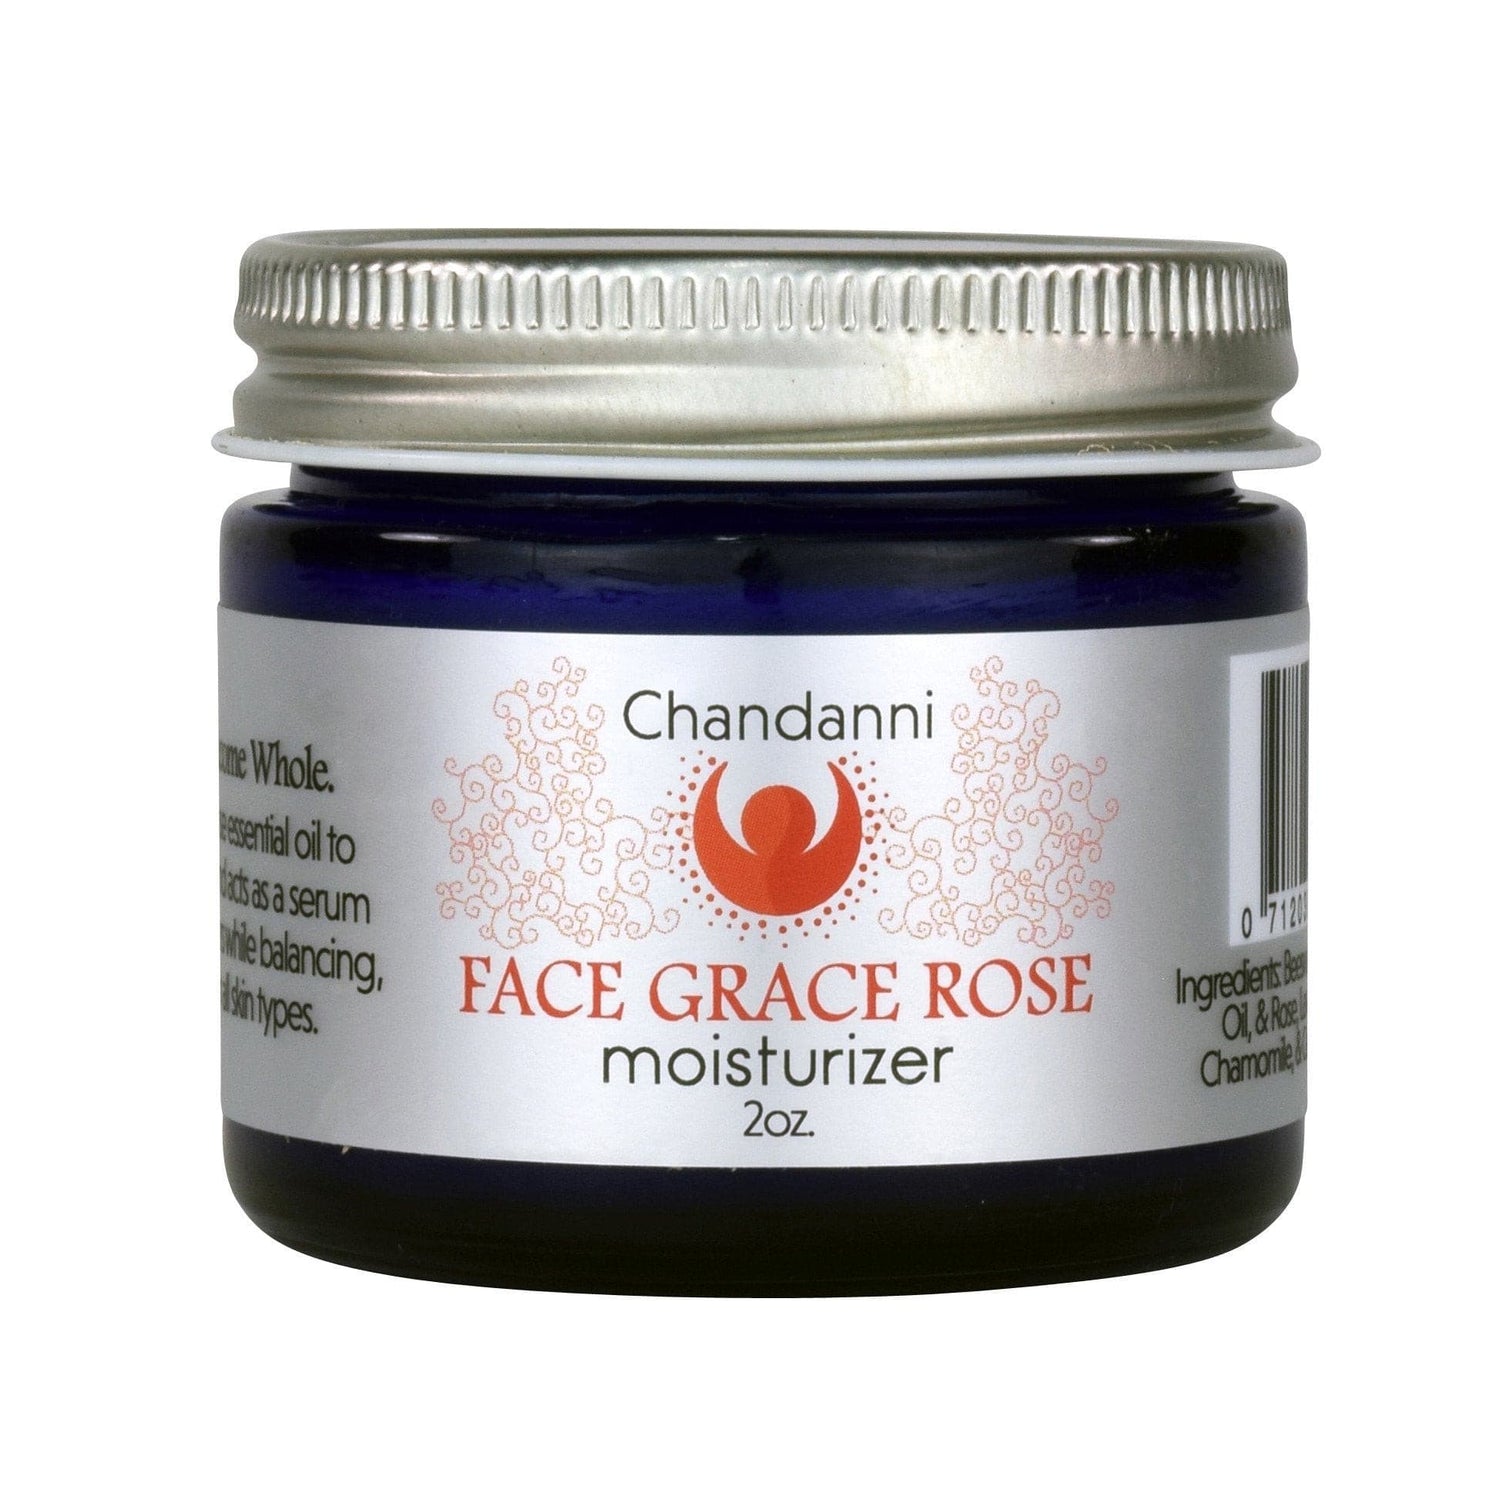 Face Grace Rose Moisturizer - Guanako.Beauty